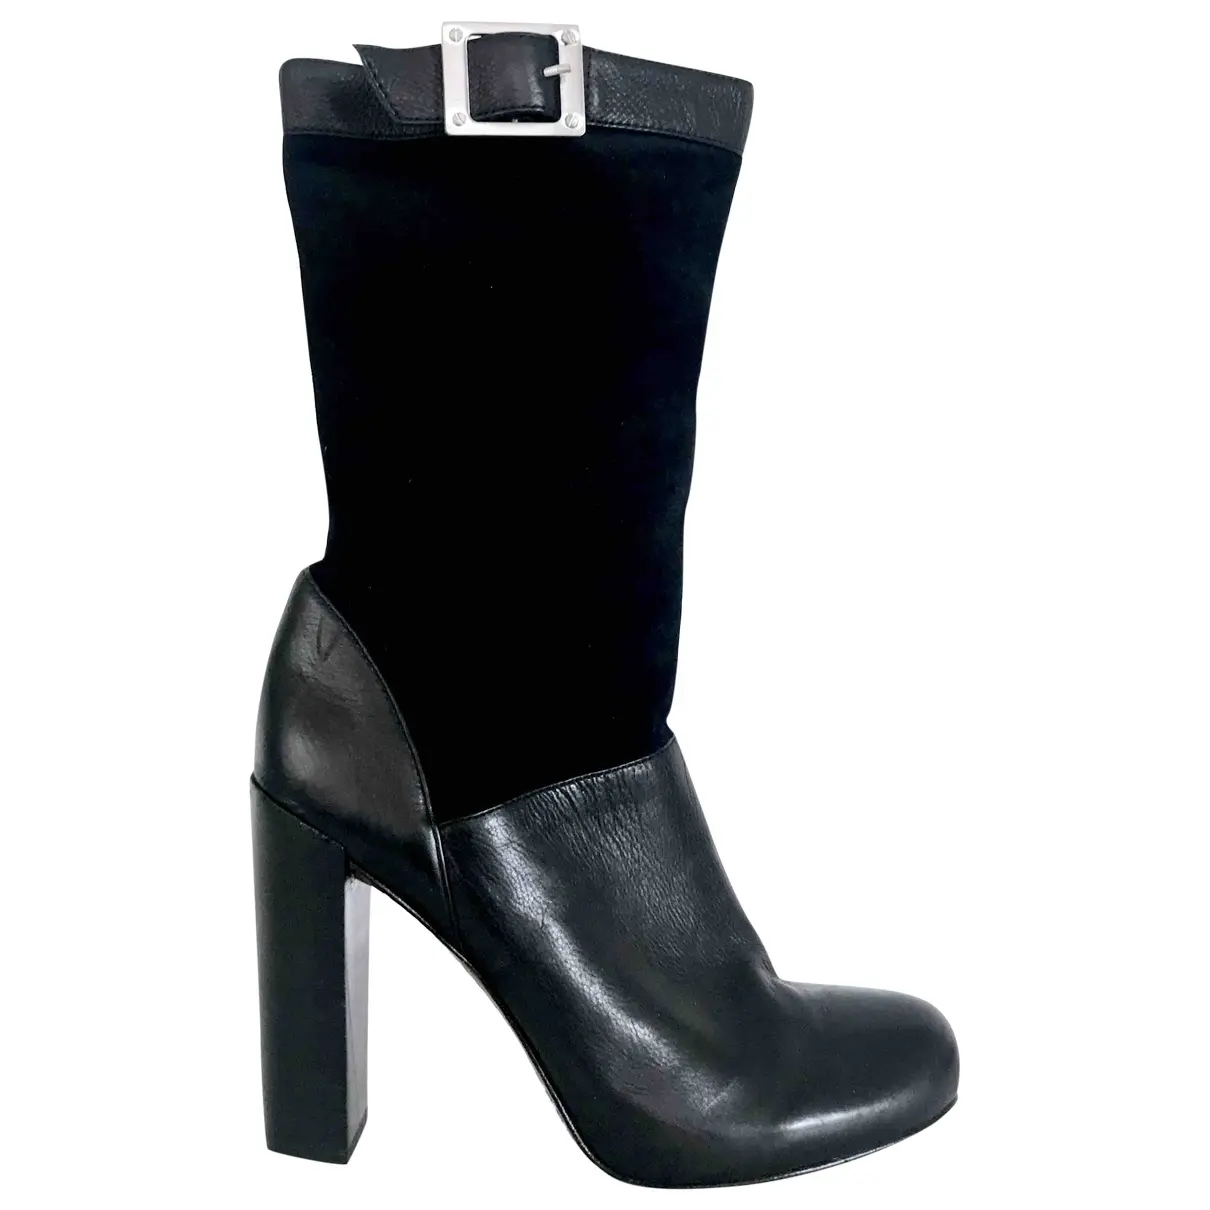 Leather boots Rachel Zoe